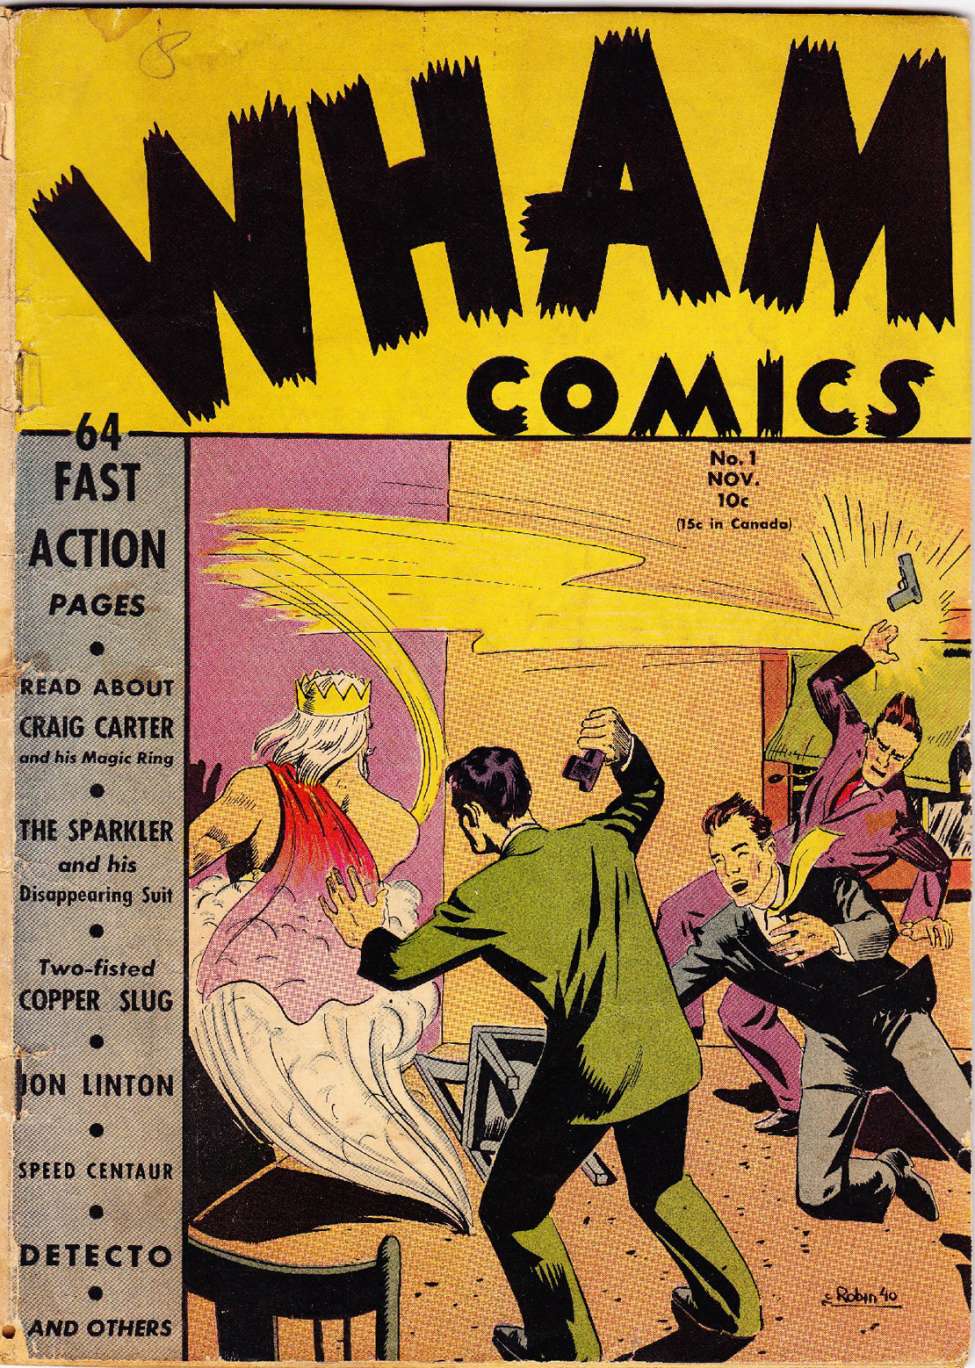 wham comic